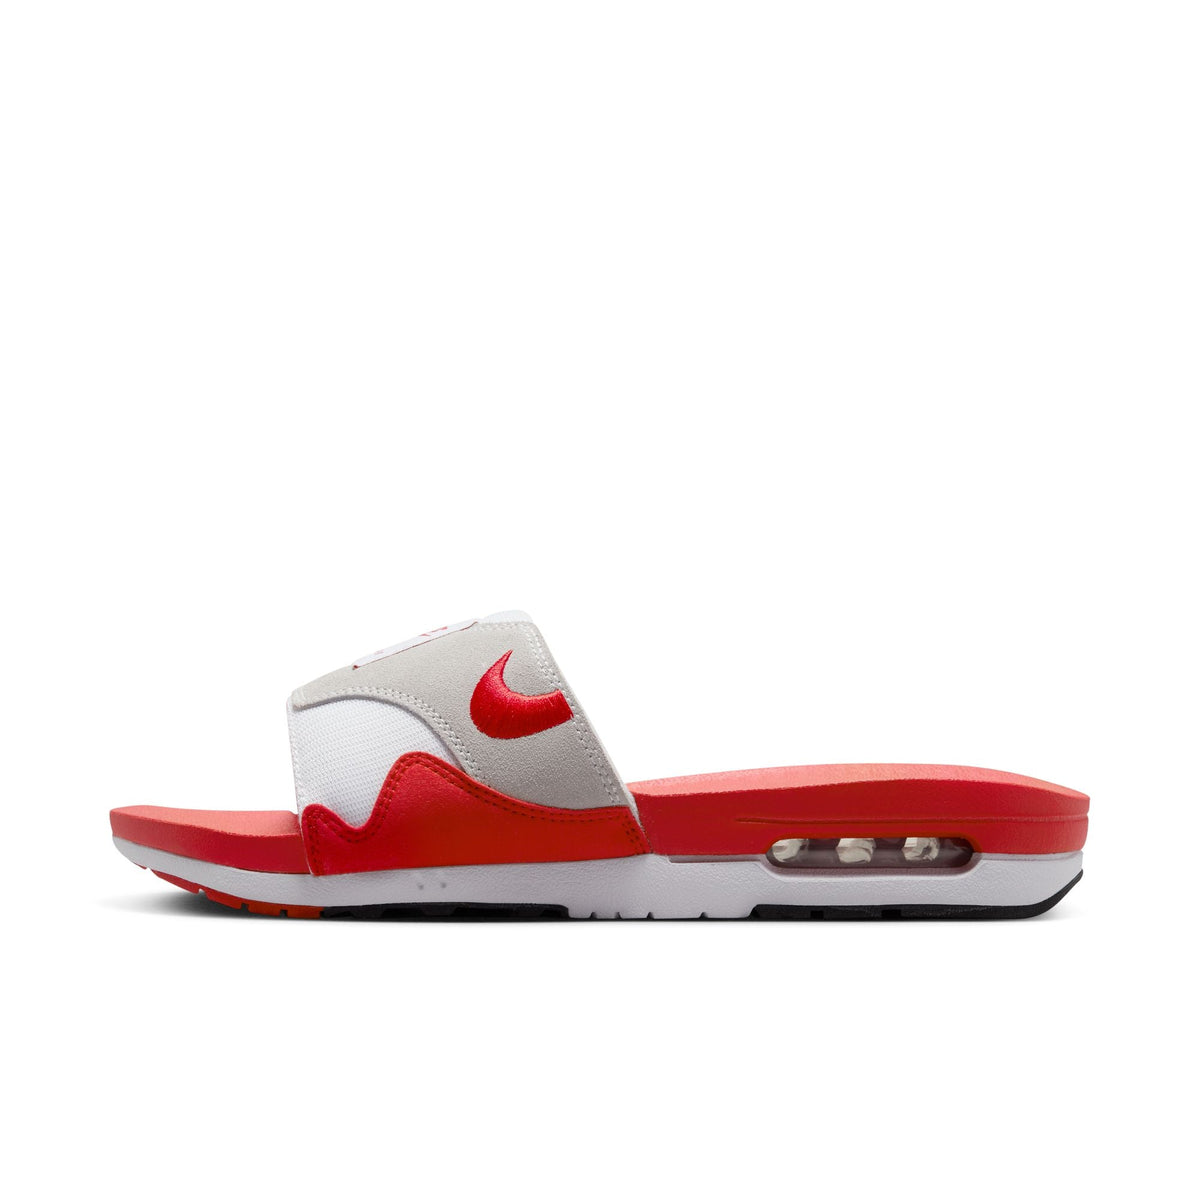 Nike Air Max 1 Slide "University Red" - Men